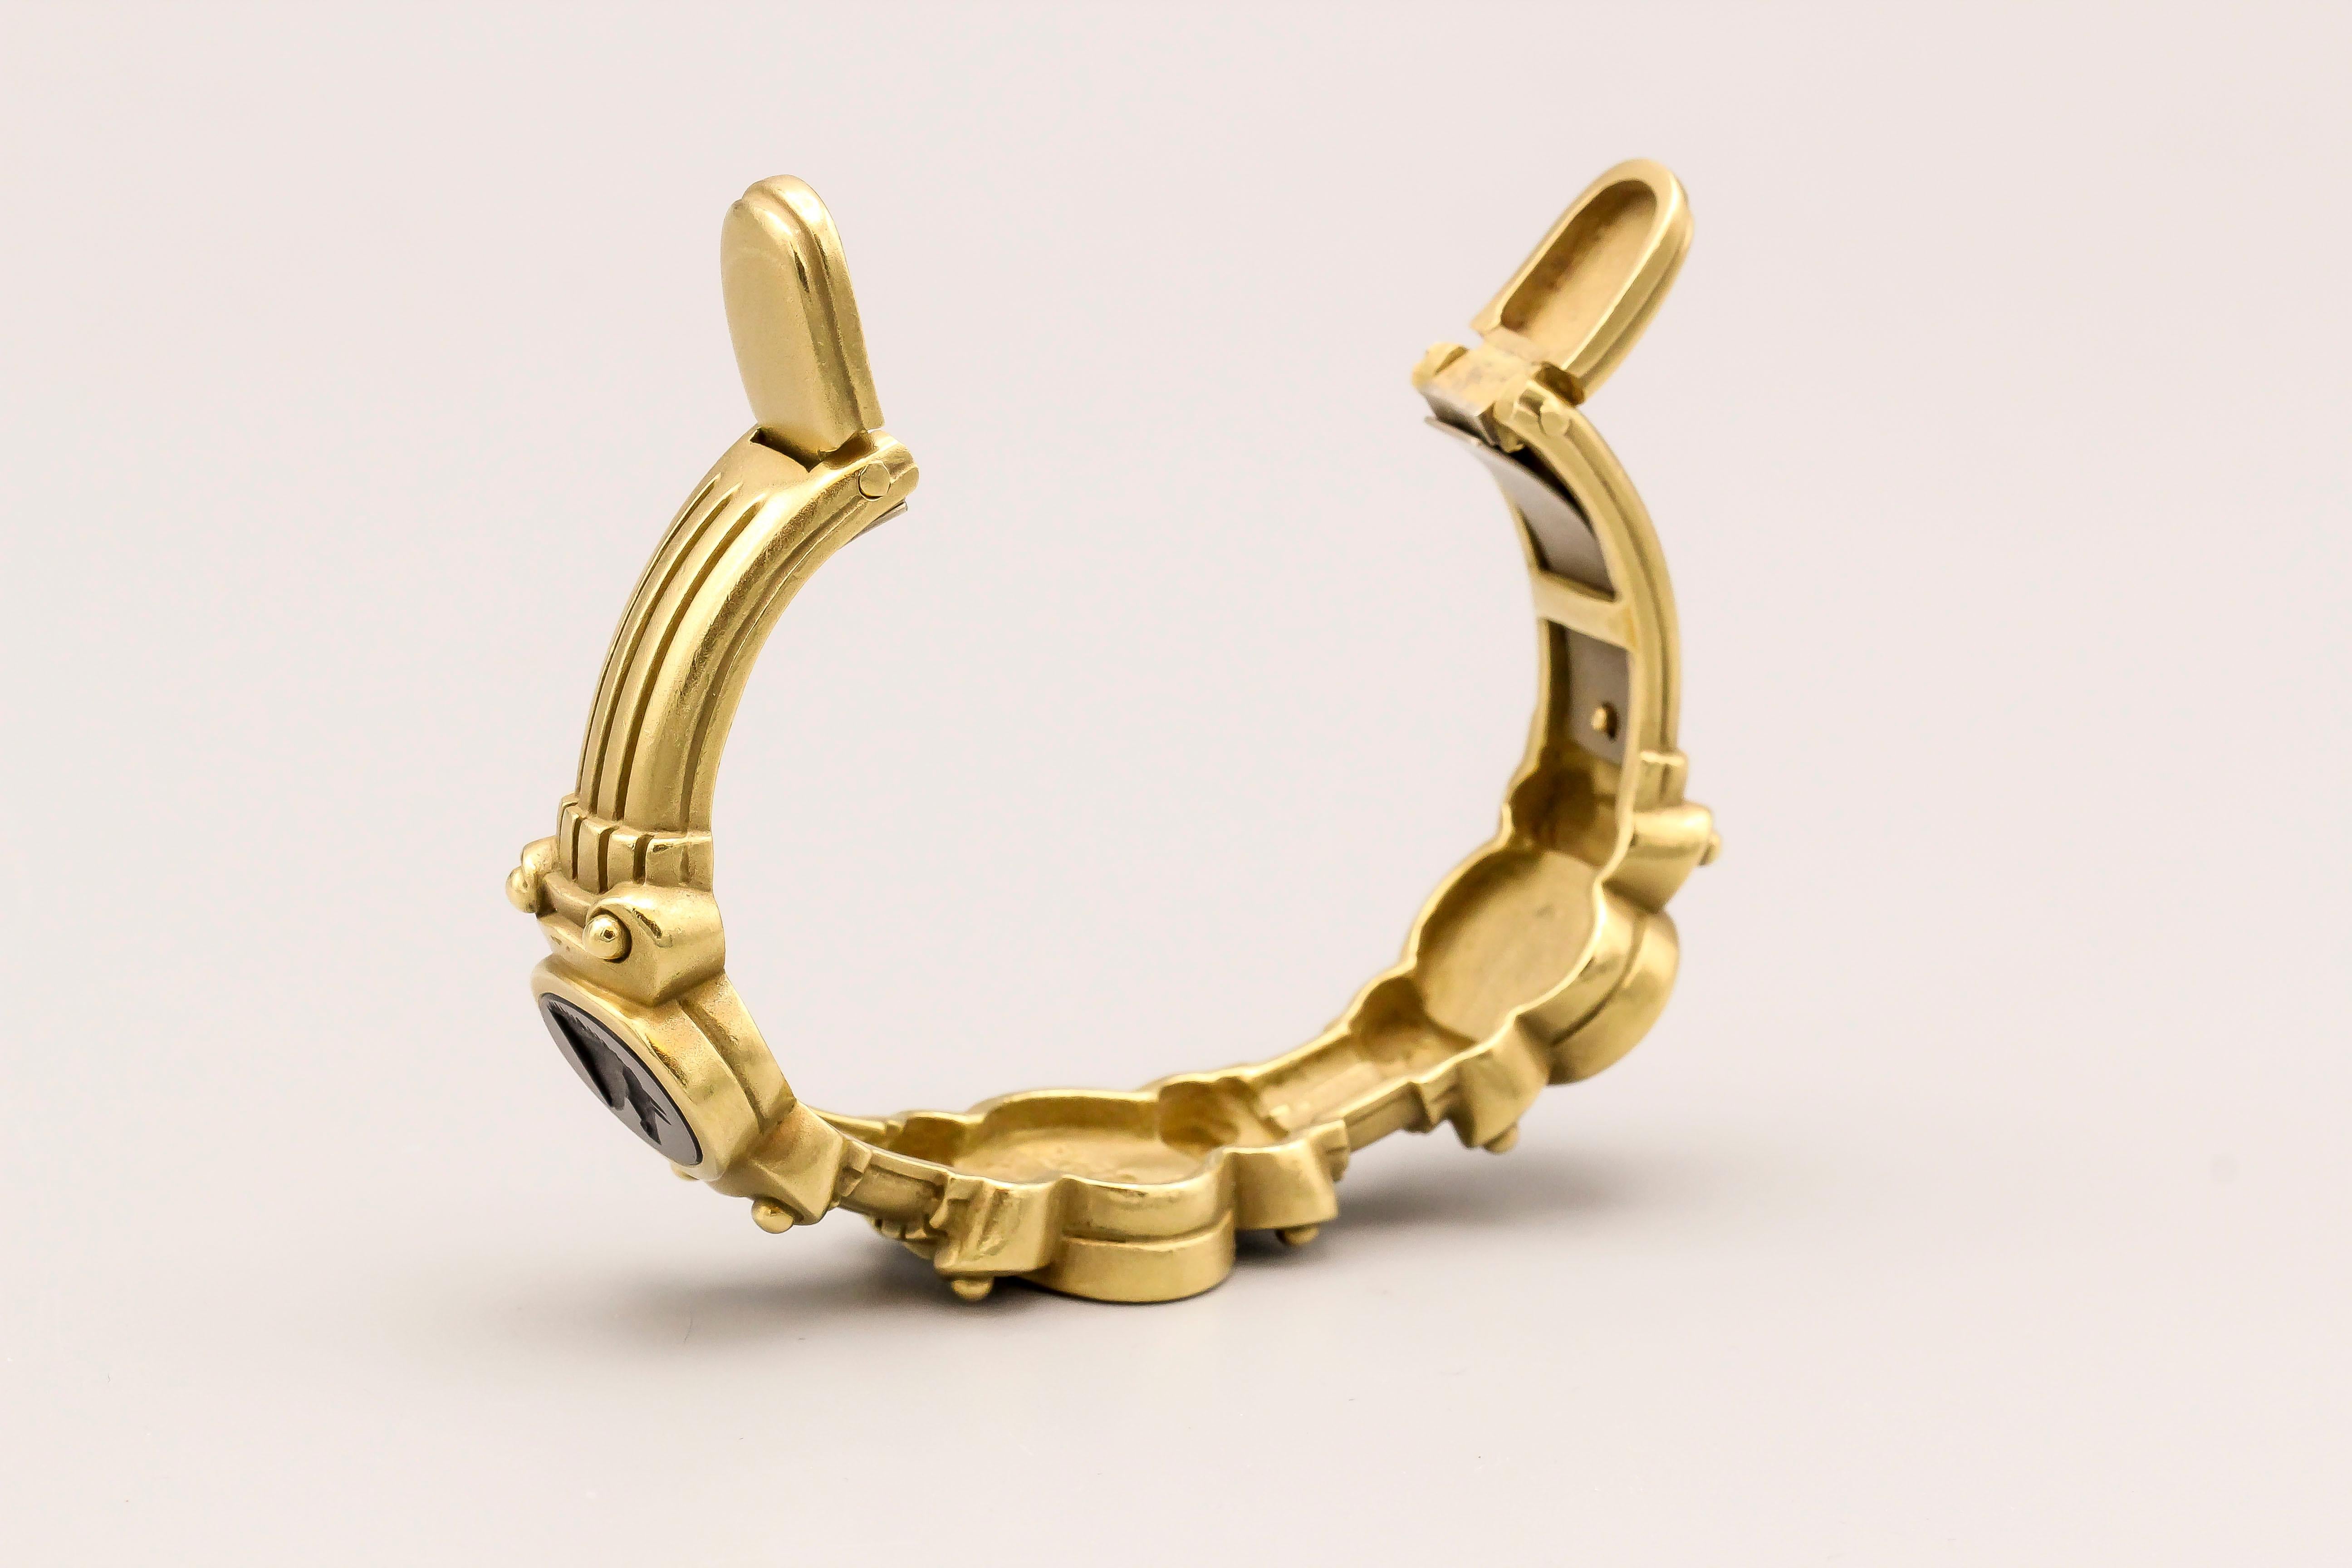 Kieselstein-Cord Intaglio and 18 Karat Gold Cuff Bracelet 3